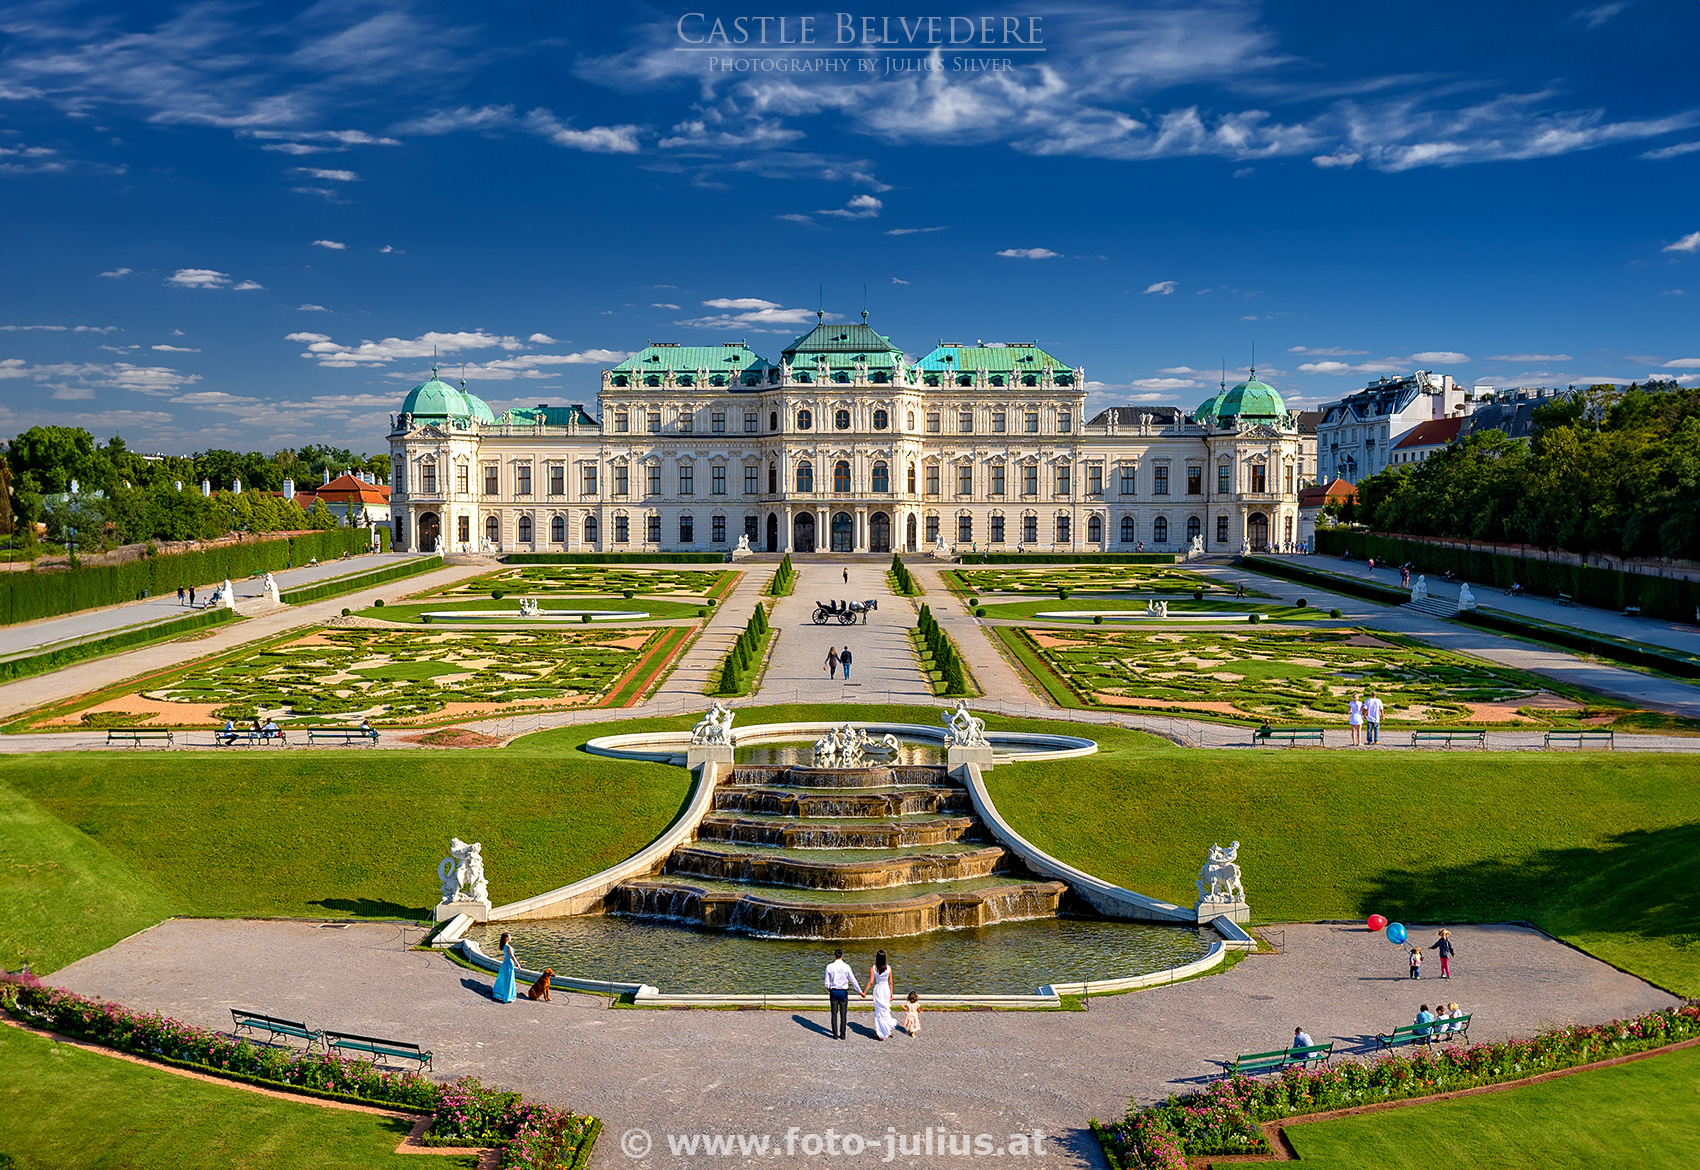 W7158a_Wien_Belvedere_Schloss.jpg, 985kB